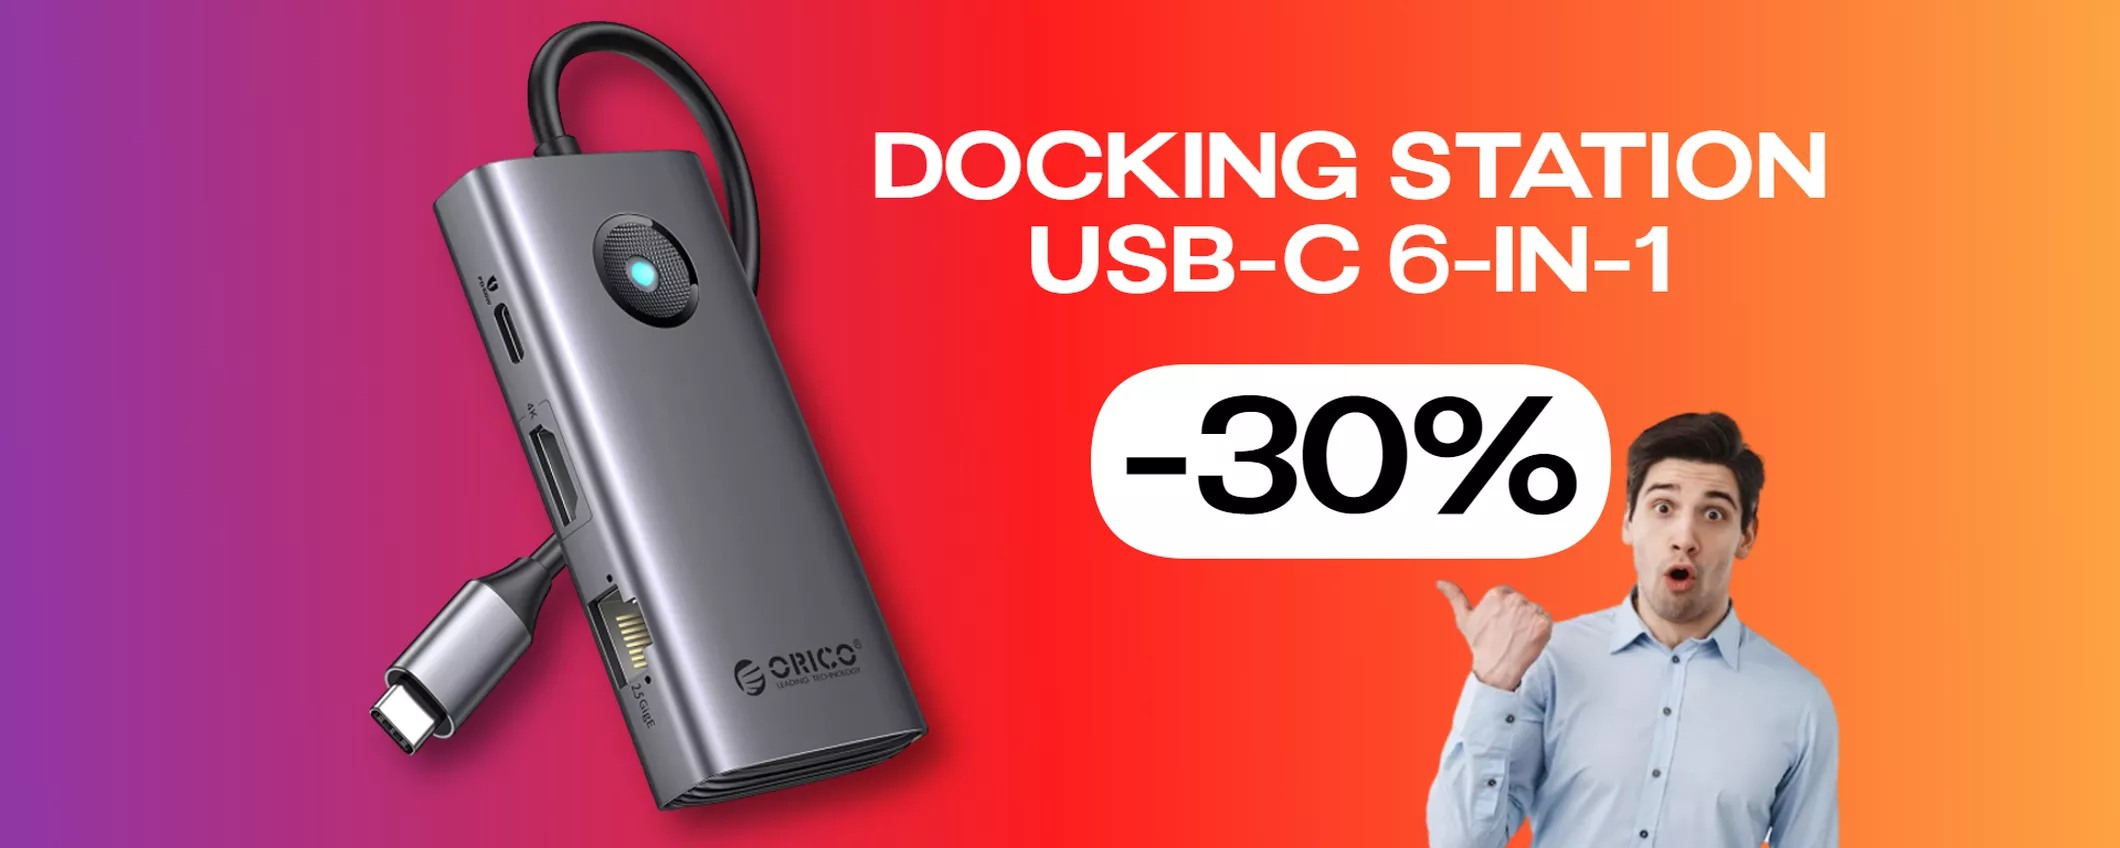 Docking Station USB-C 6-in-1 da FAVOLA ad un prezzo WOW (-30%)